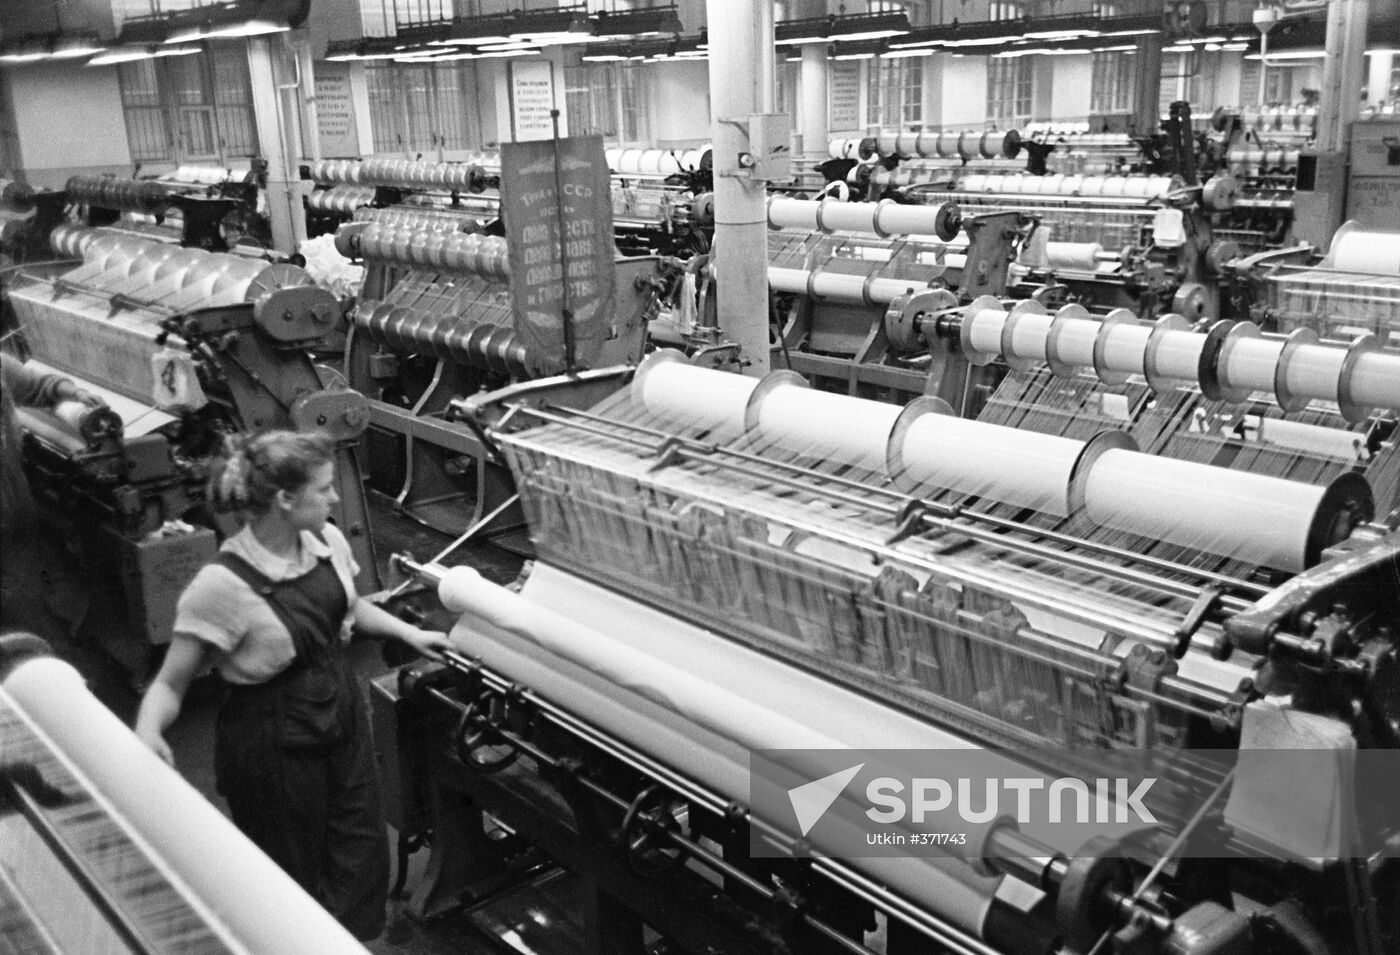 The Krasnoye Znamya knitwear factory